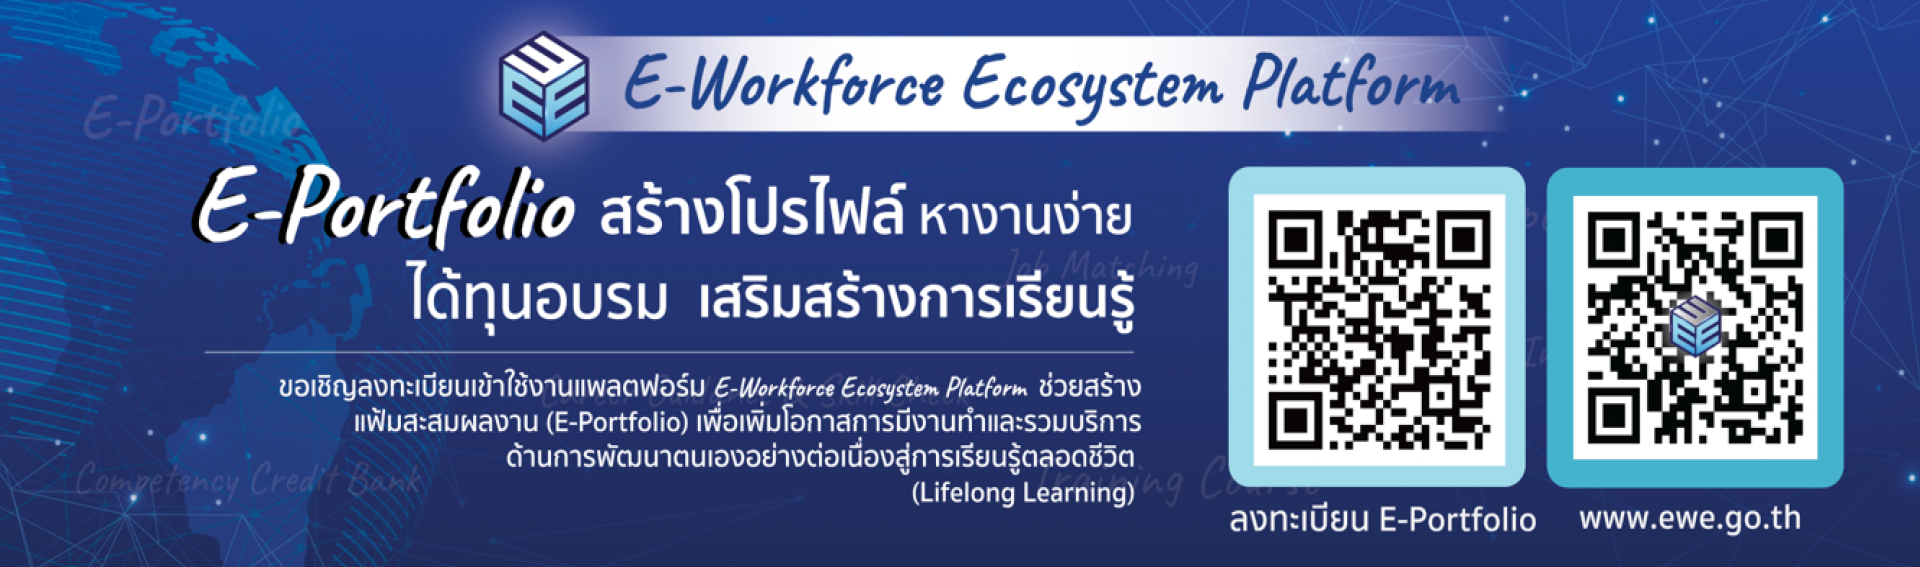 สร้างโปรไฟล์ หางานง่าย ได้ทุนอบรม เสริมสร้างการเรียนรู้ E-Workforce Ecosystem Platform 